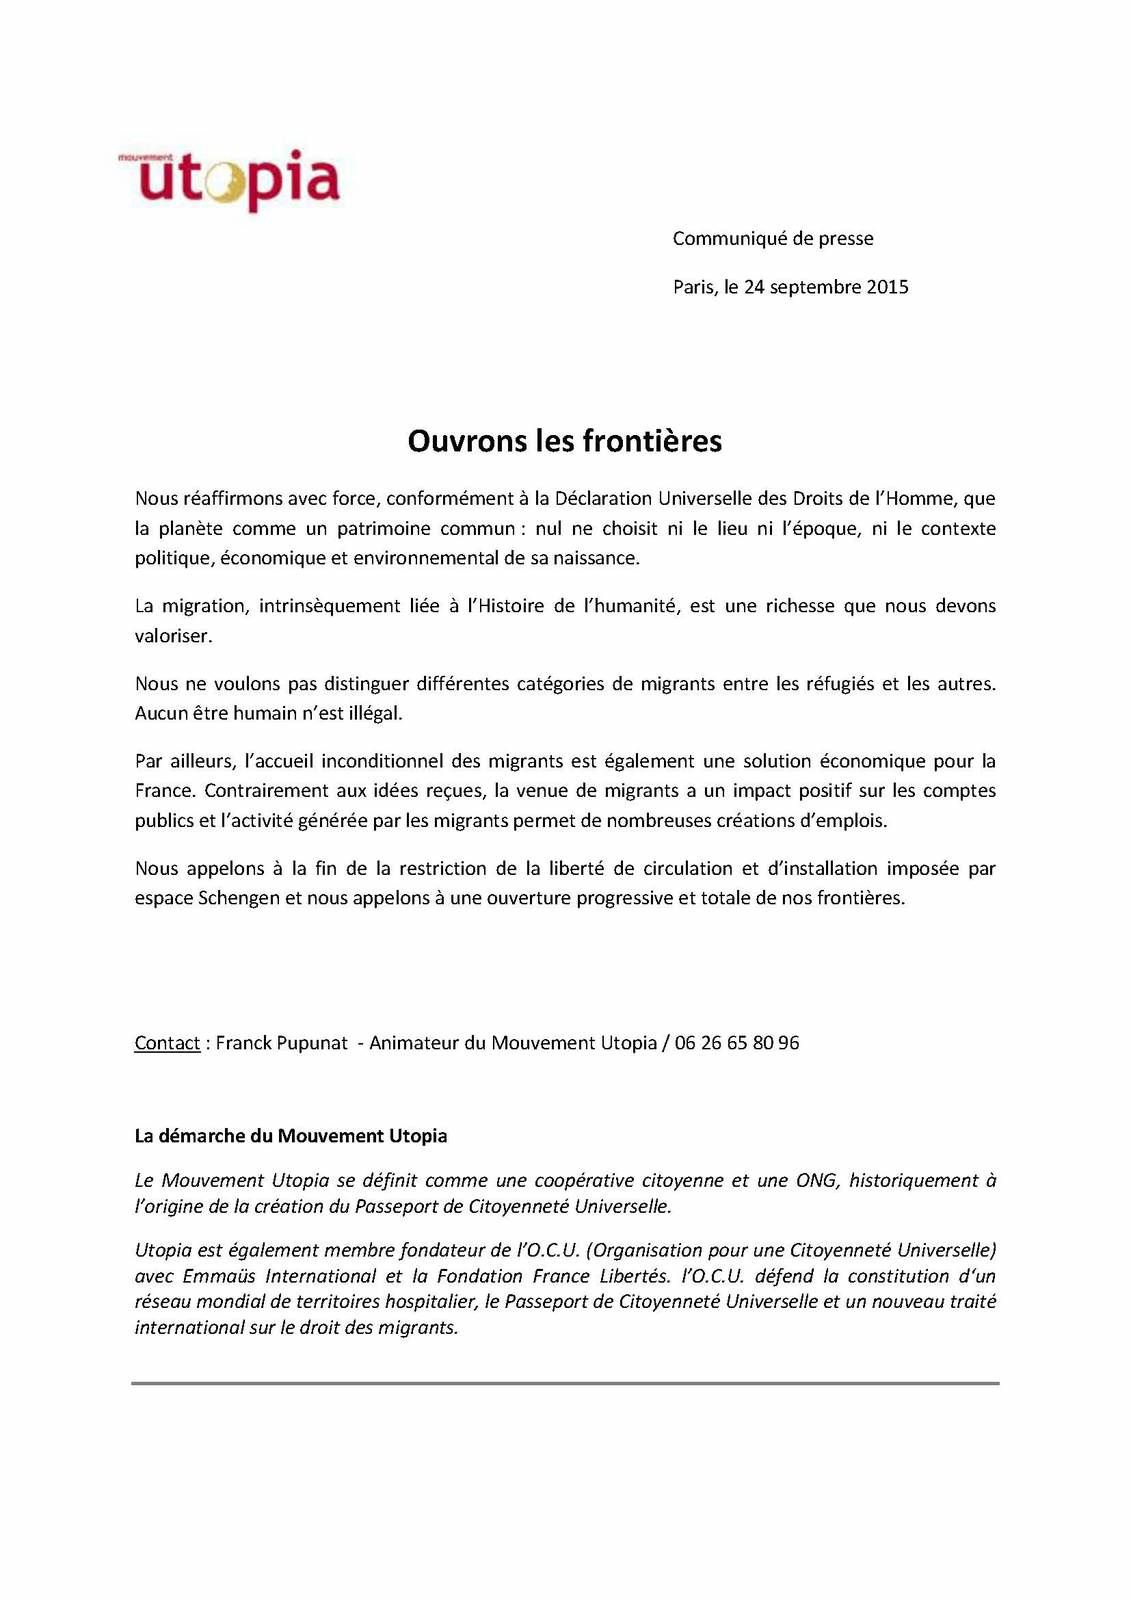 France: l'ONG Utopia appelle à l'ouverture des frontières